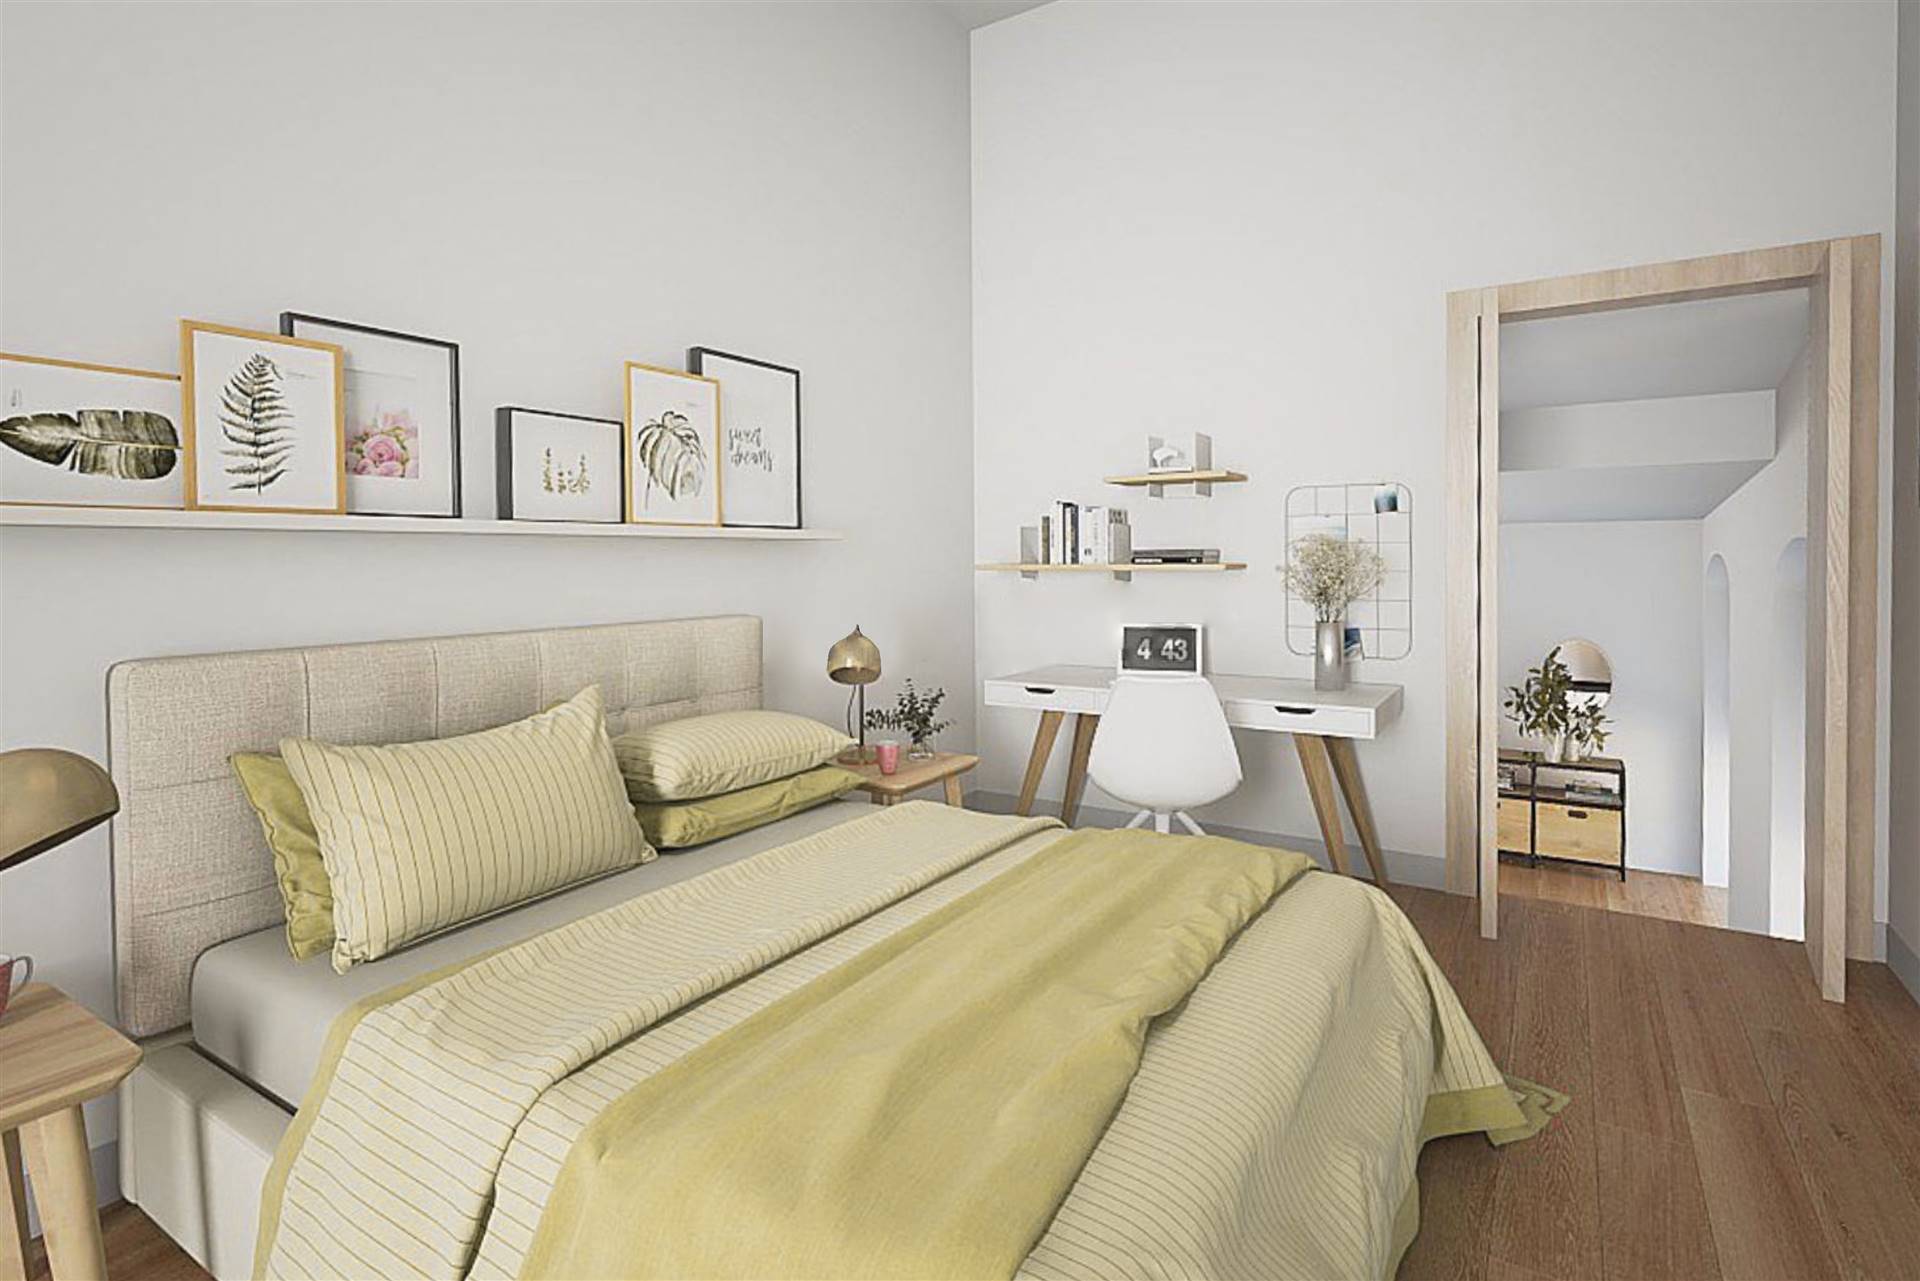 Appartamento a Vernazza con 4 locali di 43 m2 - Foto